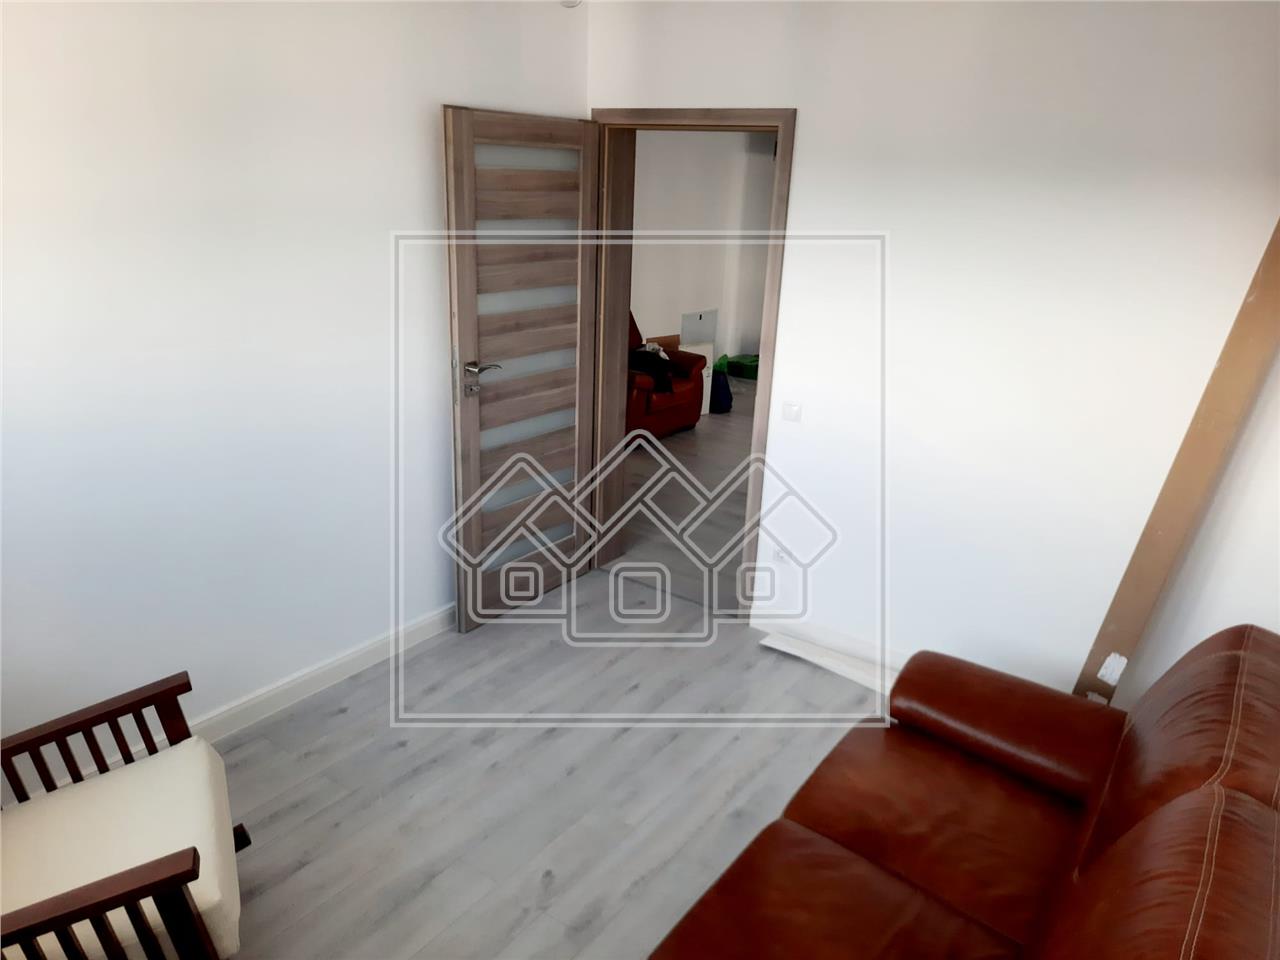 Apartament de vanzare in Sibiu -3 camere, balcon -Cartier Kogalniceanu